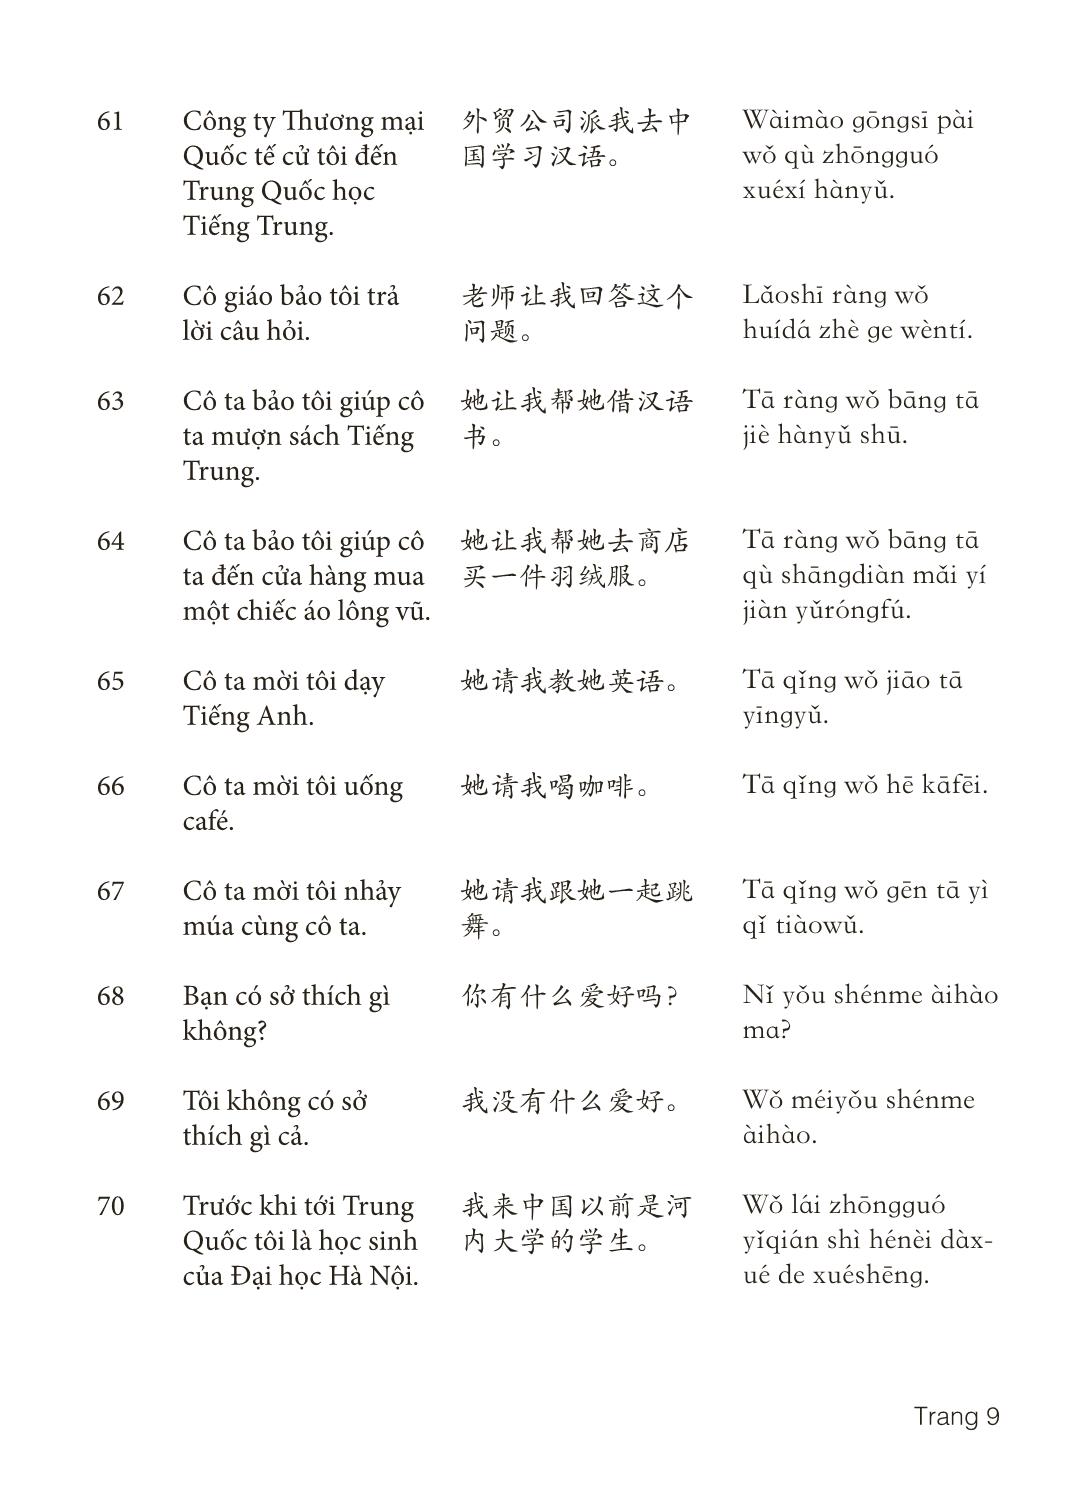 3000 Câu đàm thoại tiếng Hoa - Phần 6 trang 9